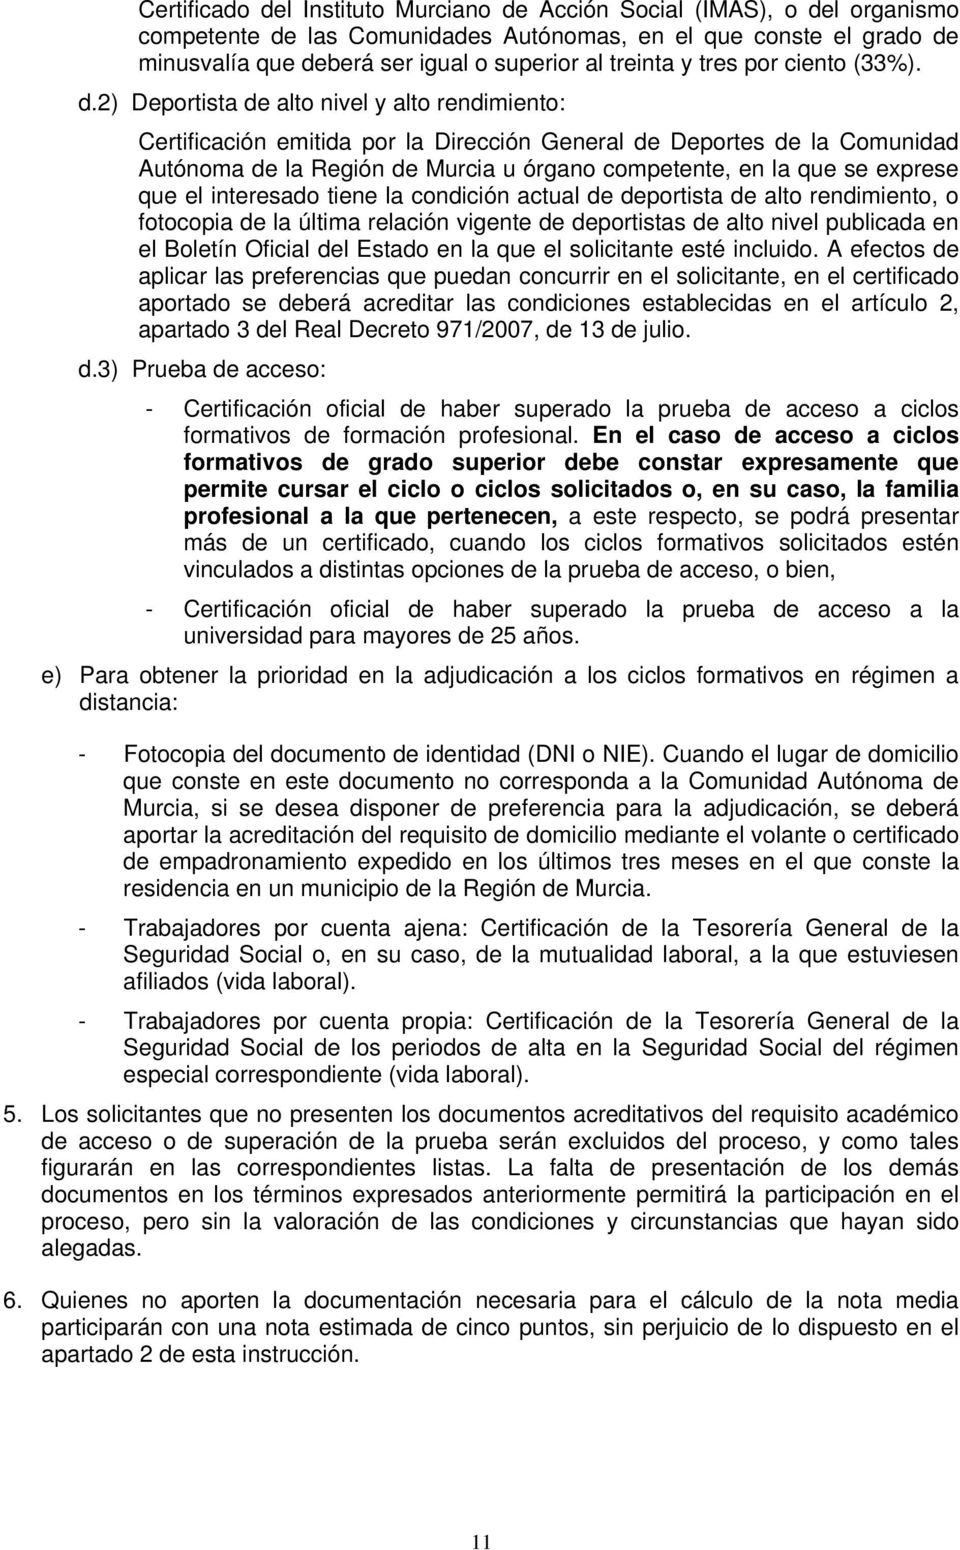 2) Deportista de alto nivel y alto rendimiento: Certificación emitida por la Dirección General de Deportes de la Comunidad Autónoma de la Región de Murcia u órgano competente, en la que se exprese